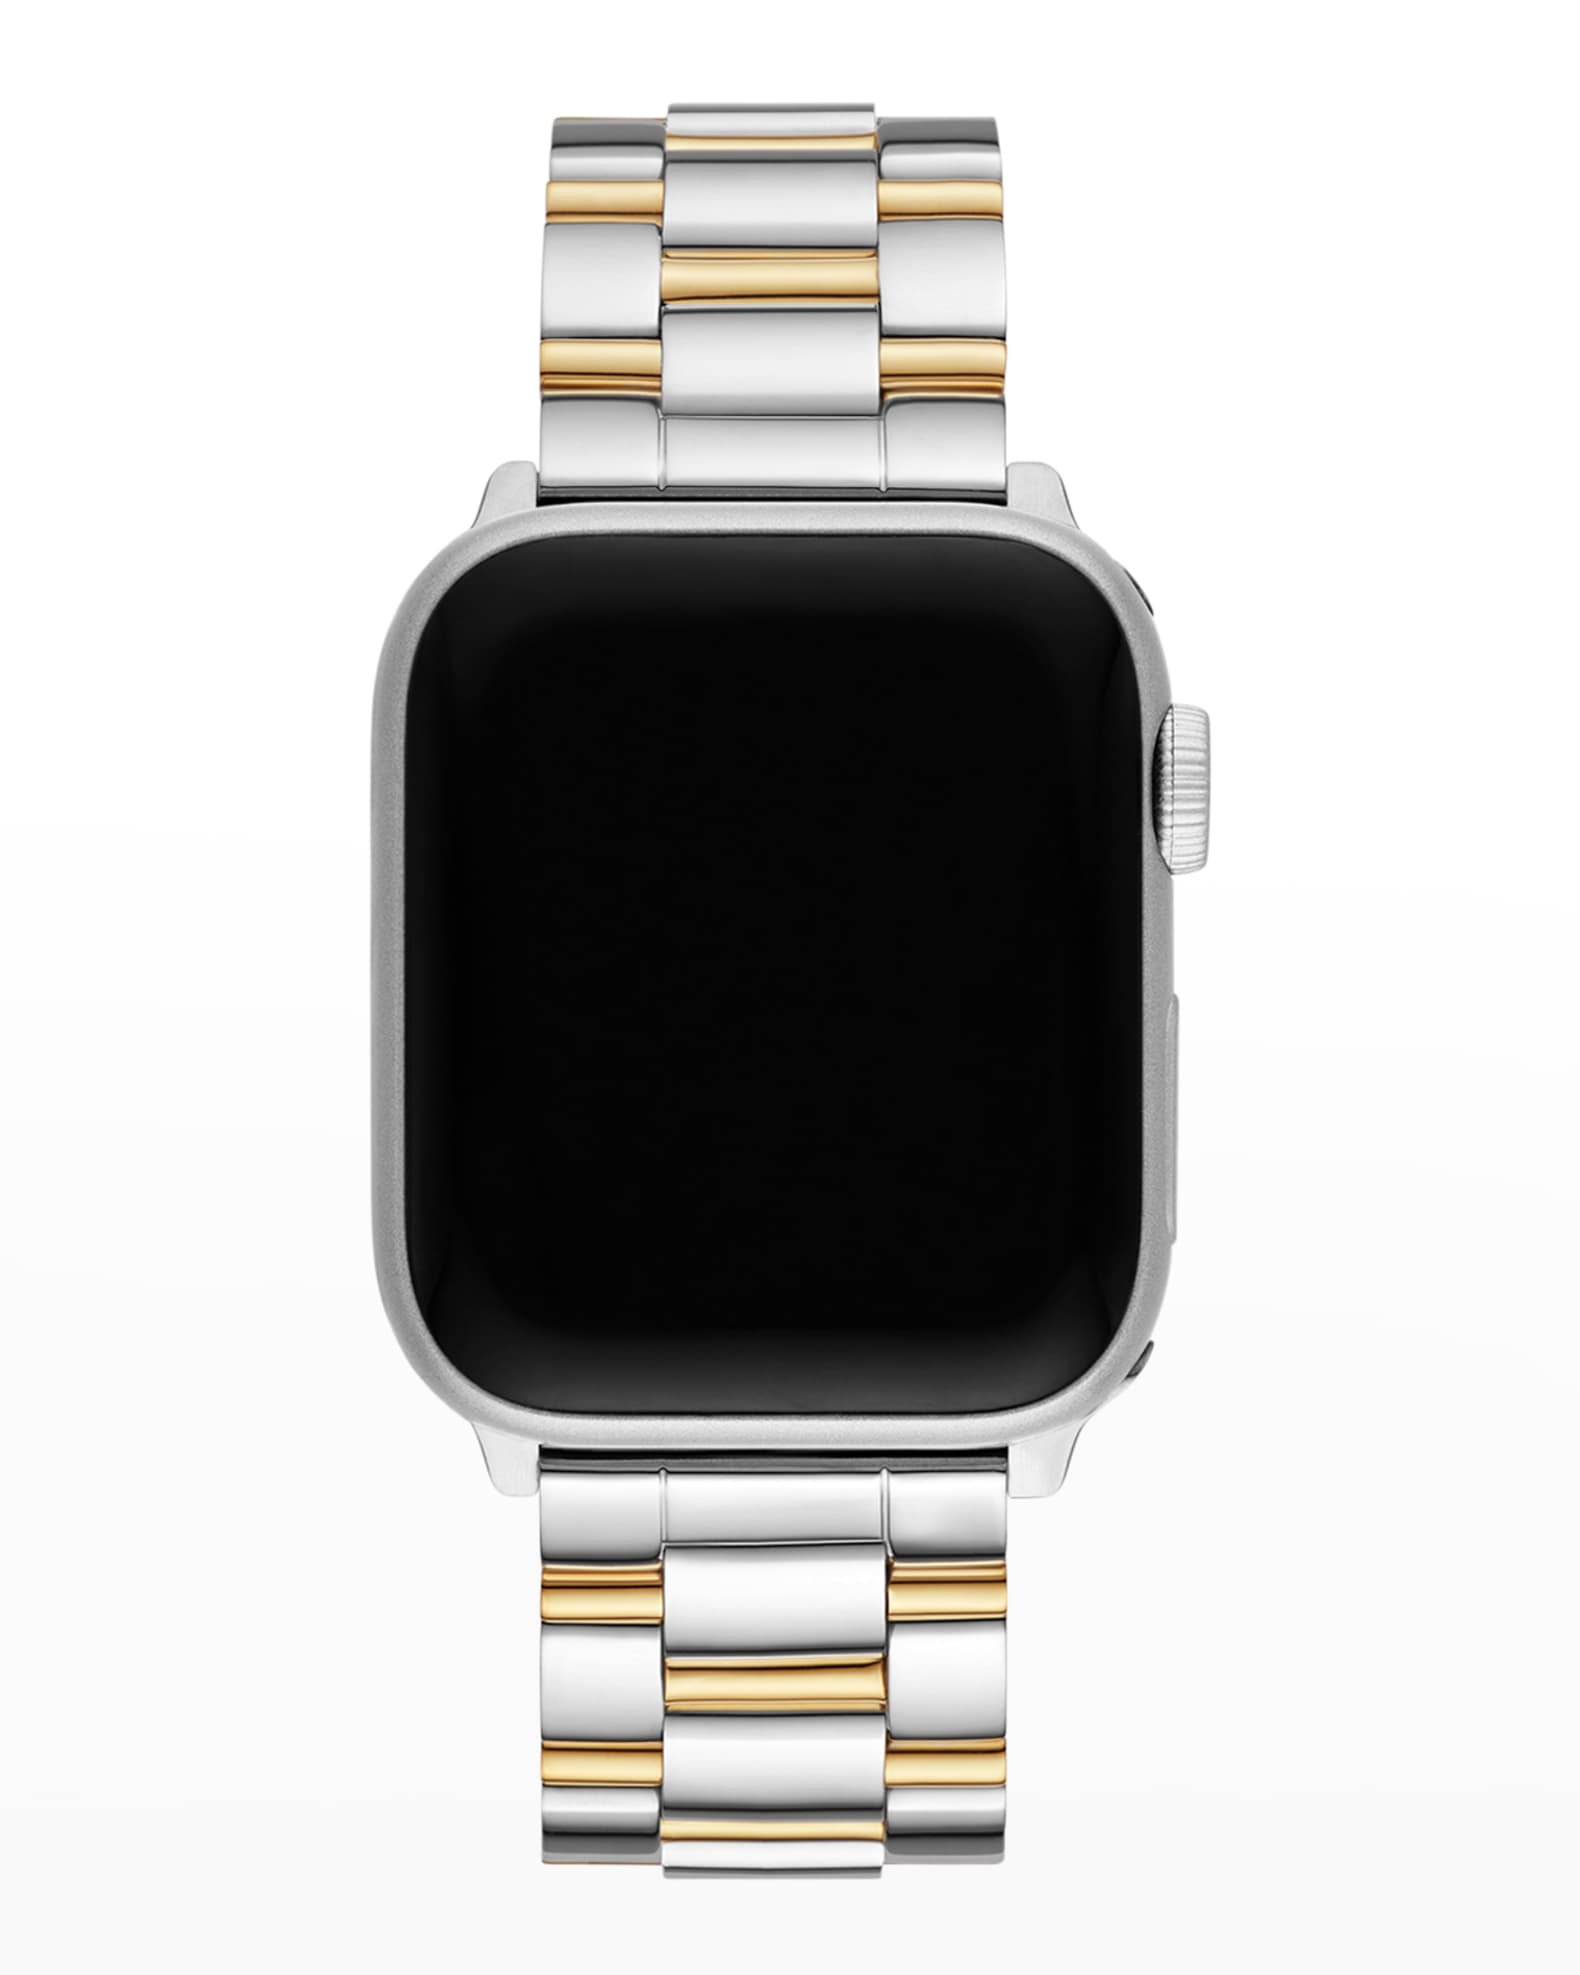 MICHELE Apple Watch 3-Link Bracelet Strap in Two-Tone | Neiman Marcus